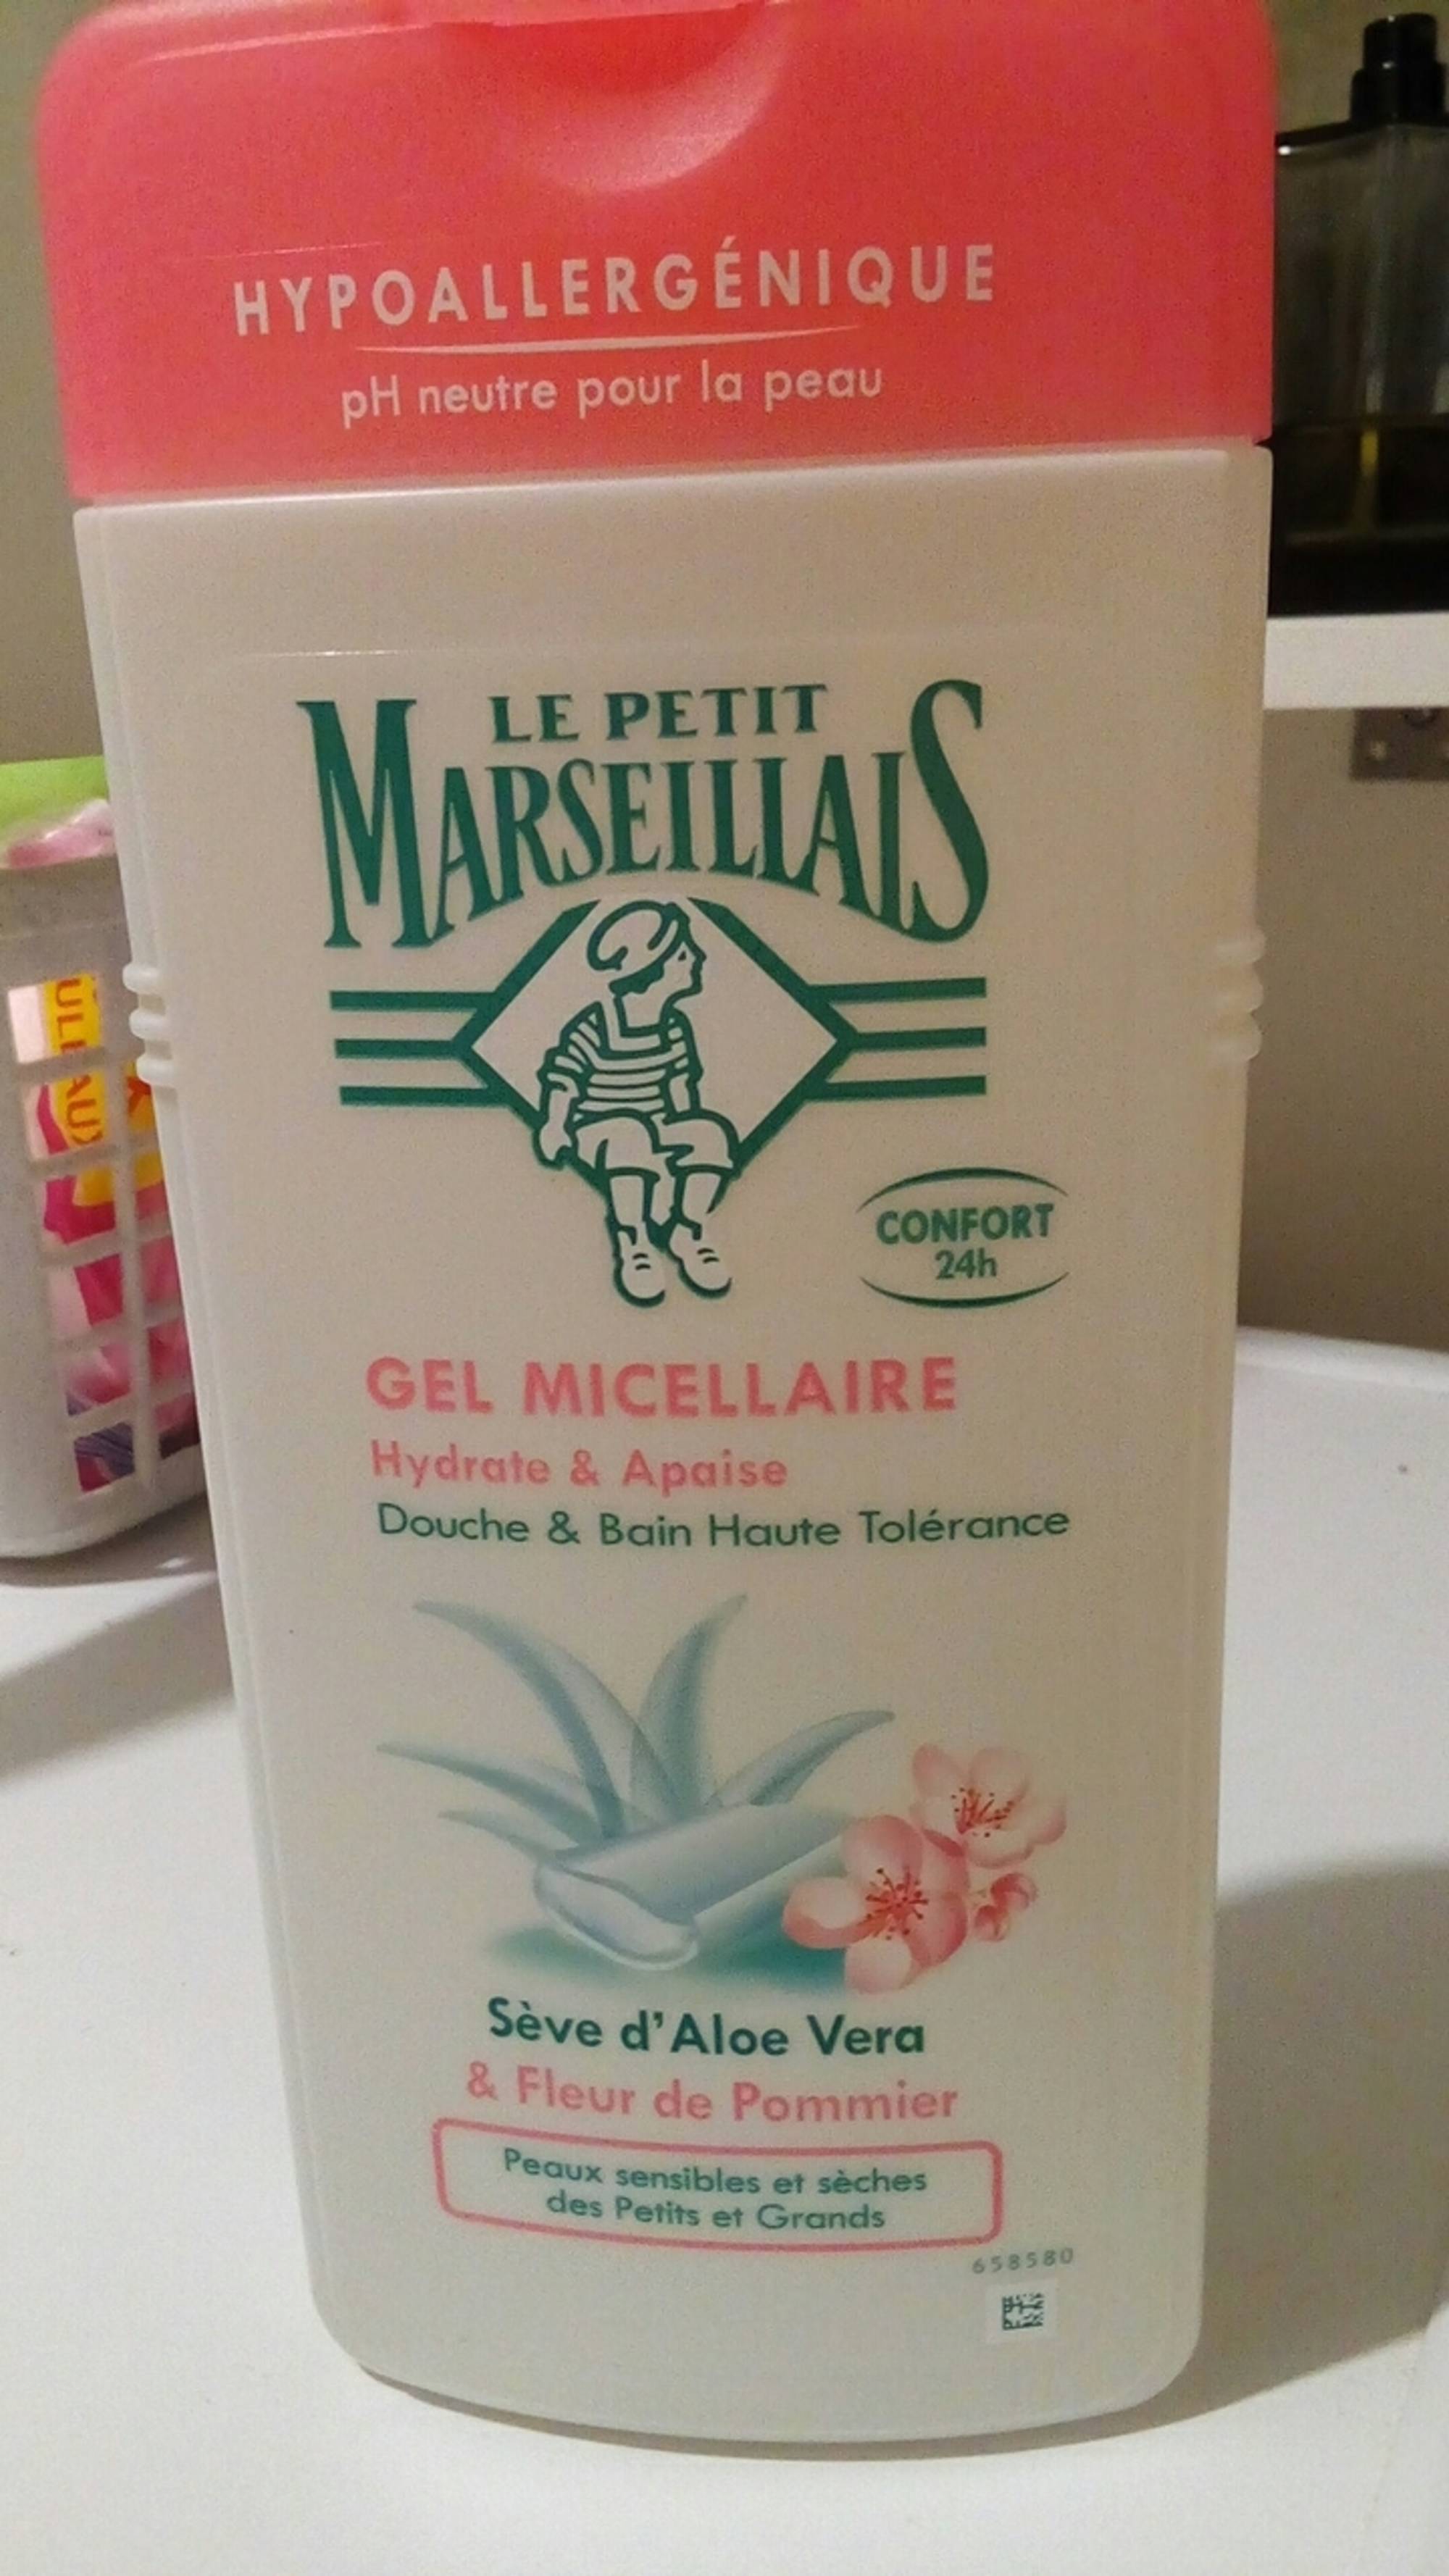 LE PETIT MARSEILLAIS - Gel micellaire - Douche & bain haute tolérance